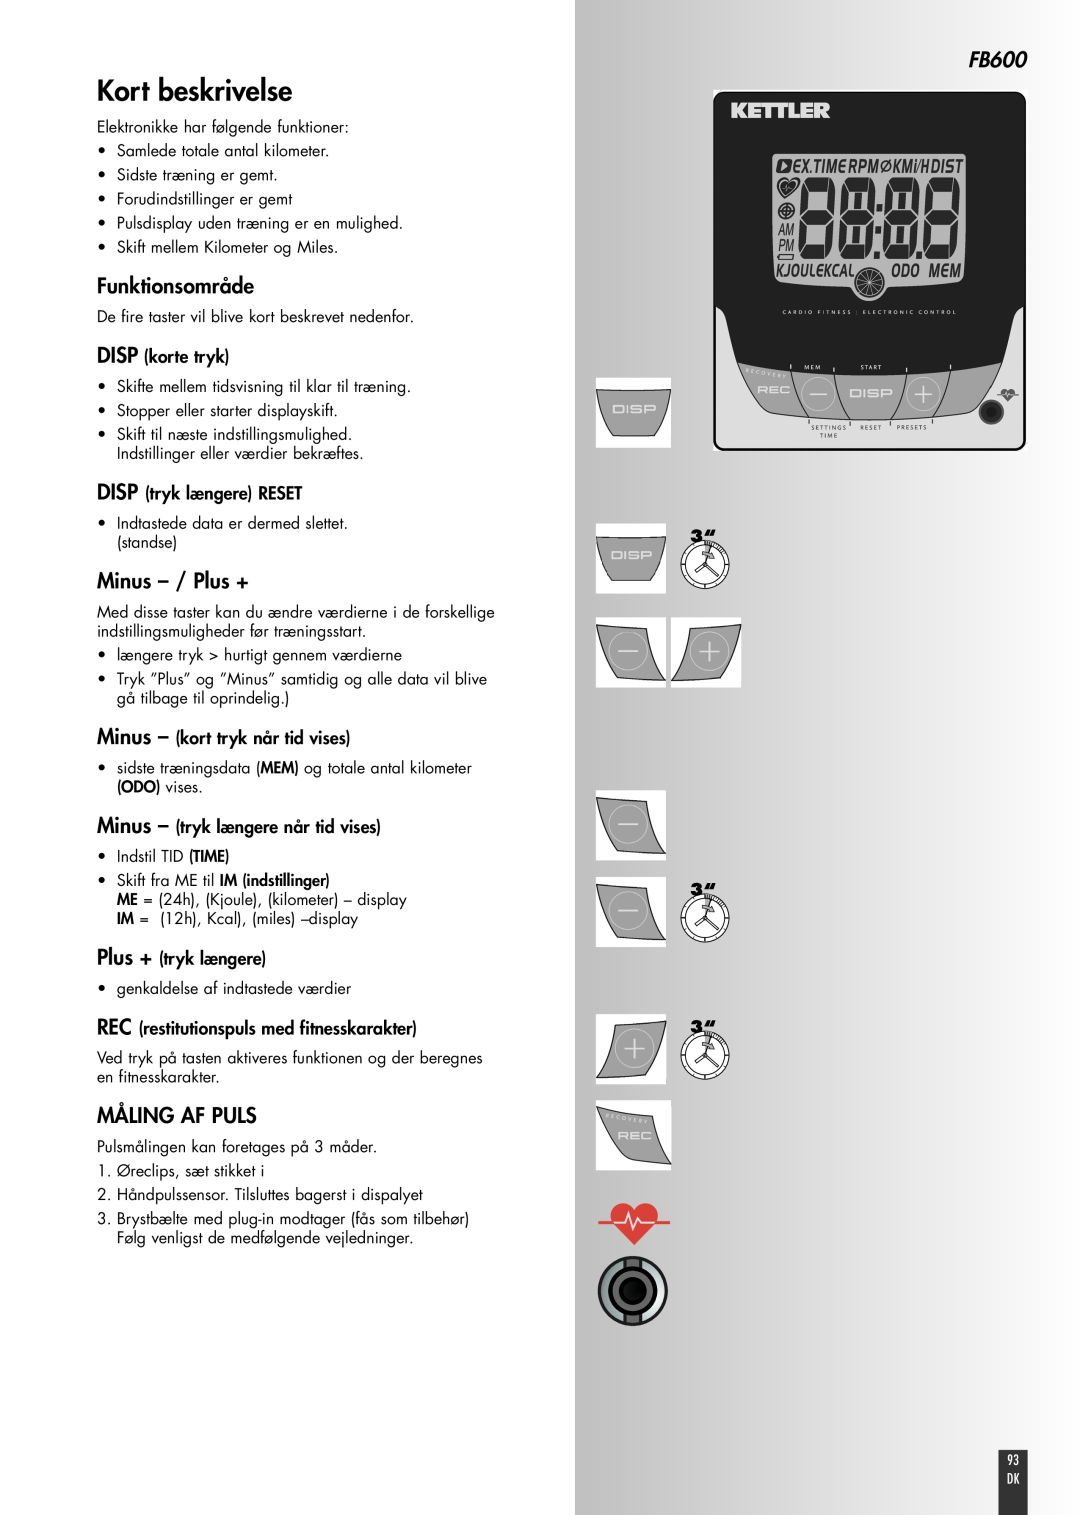 Kettler FB600 Kort beskrivelse, Funktionsområde, Minus - / Plus +, Måling Af Puls, DISP korte tryk, Plus + tryk længere 